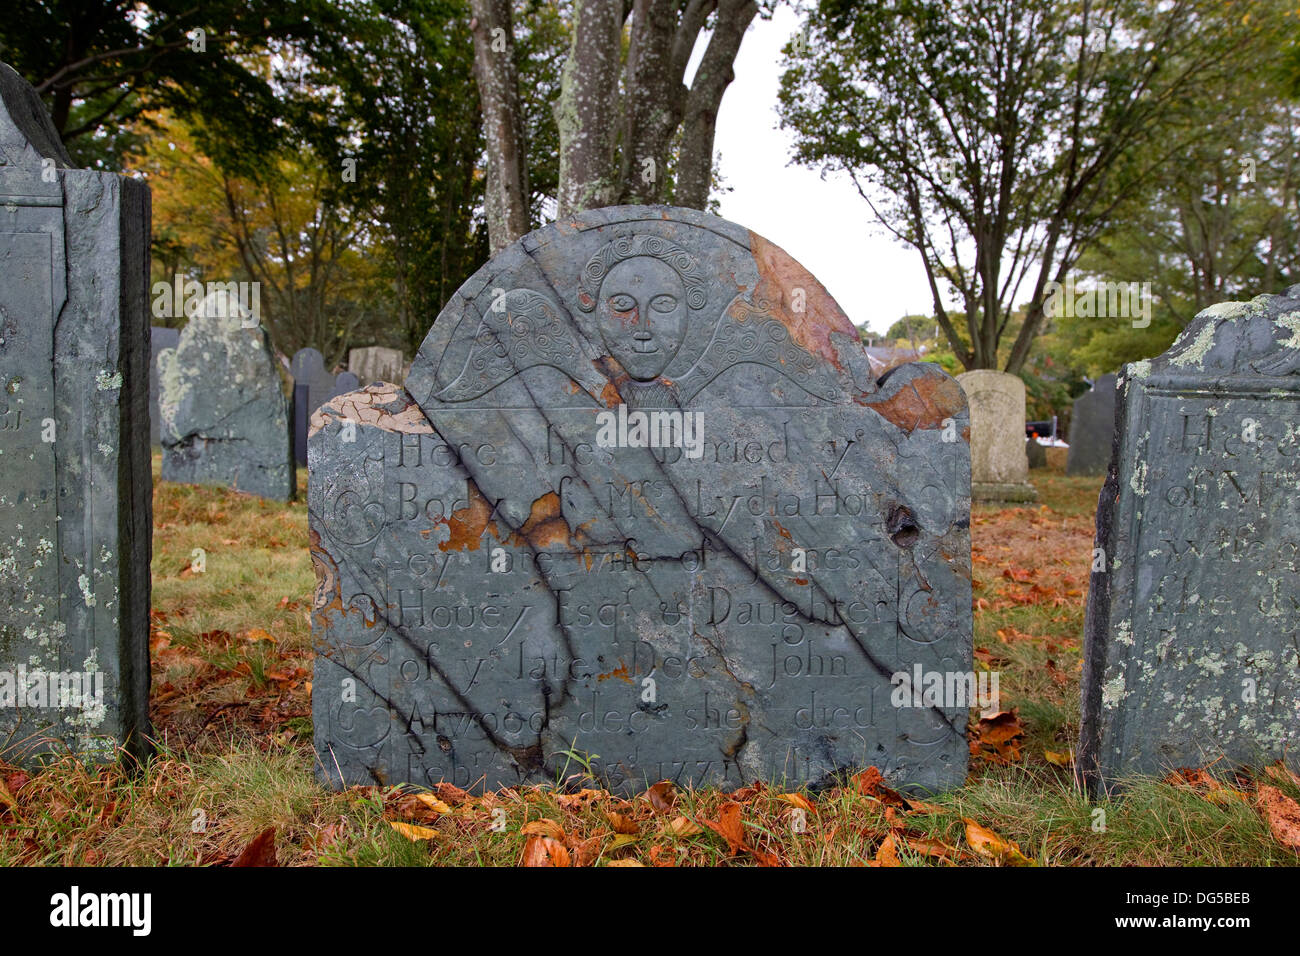 Vieux cimetière pierre tombale de la Nouvelle-Angleterre, pierre tombale, Plymouth Rock, Massachusetts en automne Banque D'Images